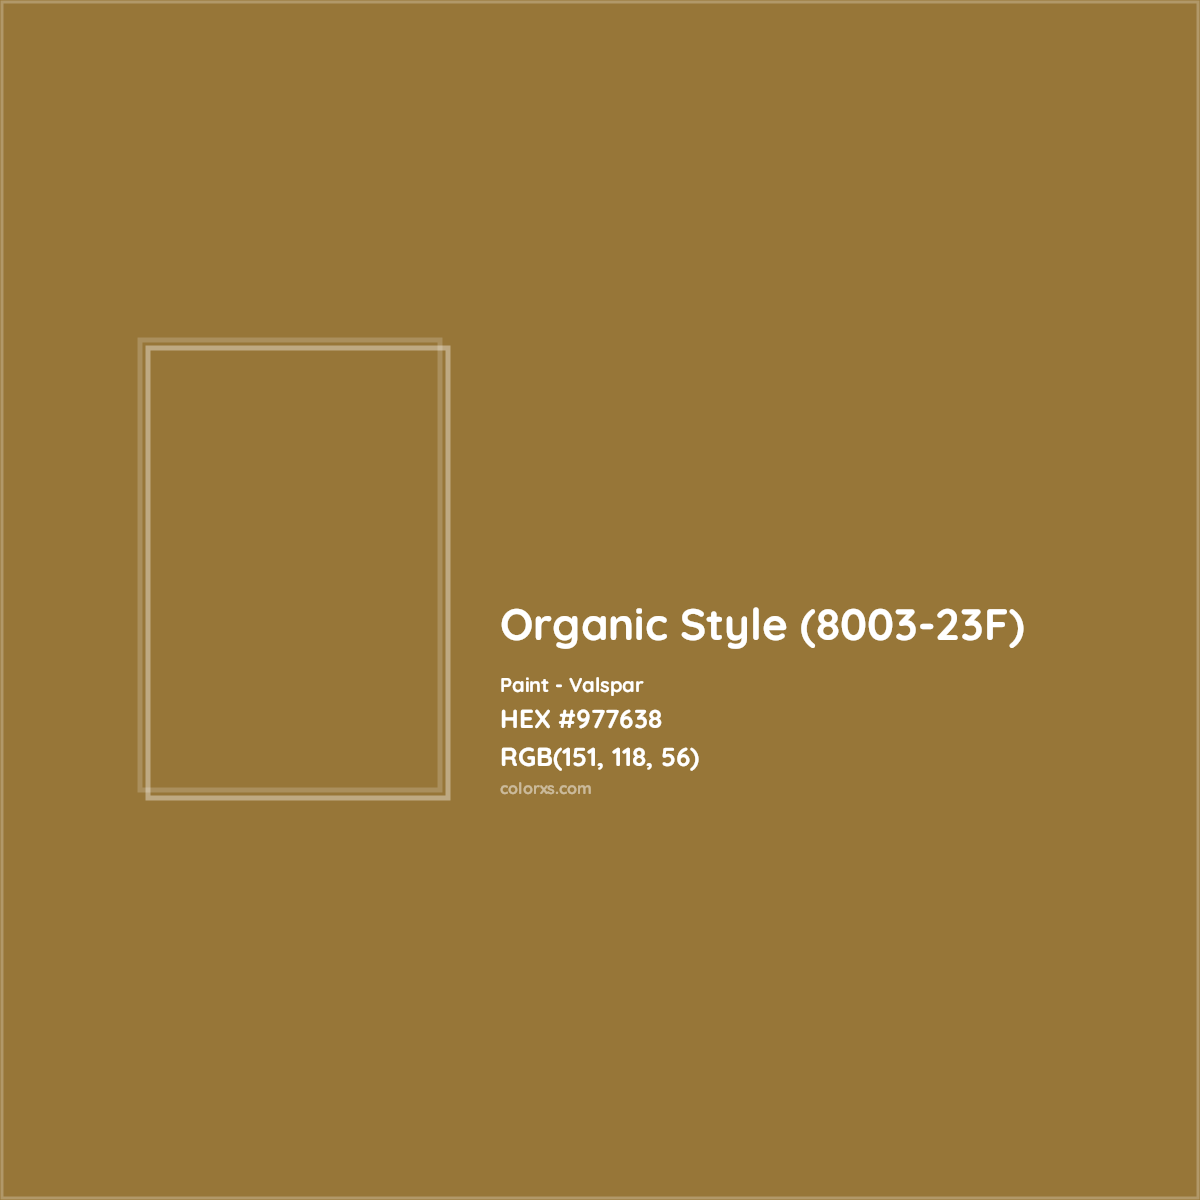 HEX #977638 Organic Style (8003-23F) Paint Valspar - Color Code